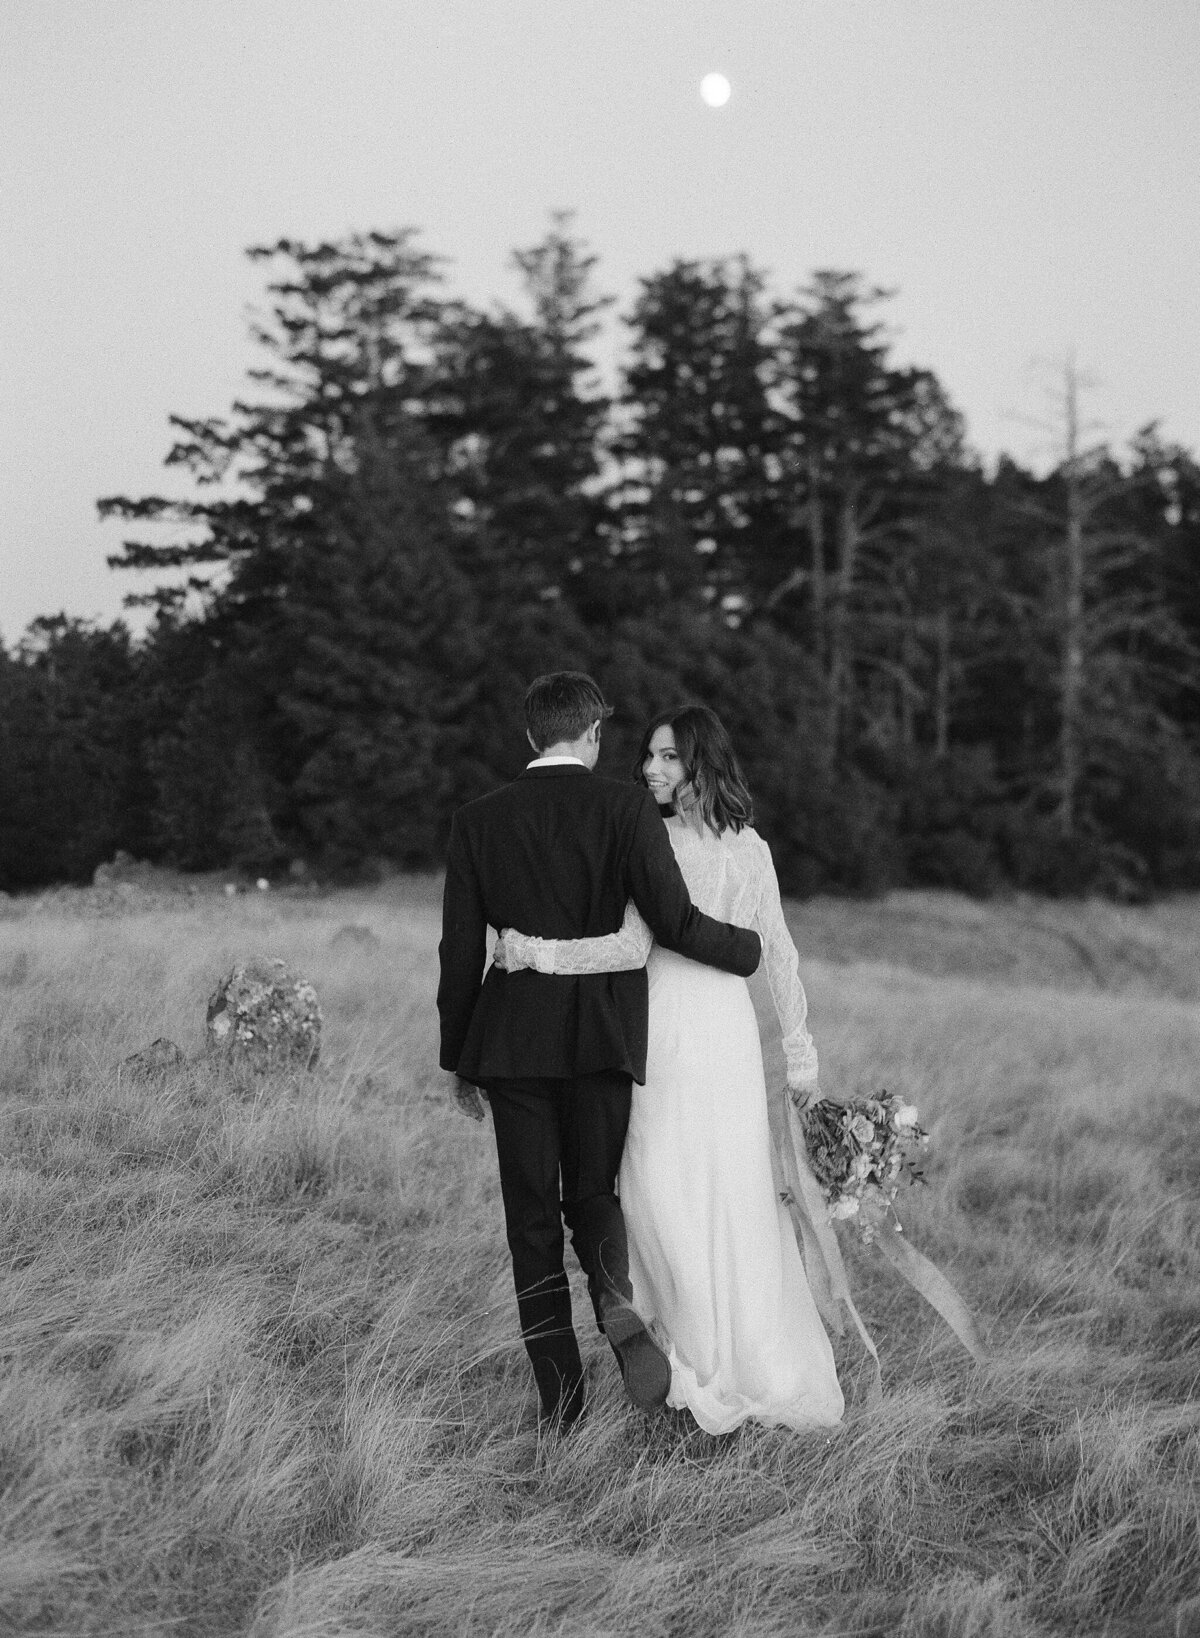 Wedding Editorial near San Francisco by San Francisco Wedding Photographers Pinnel Photography